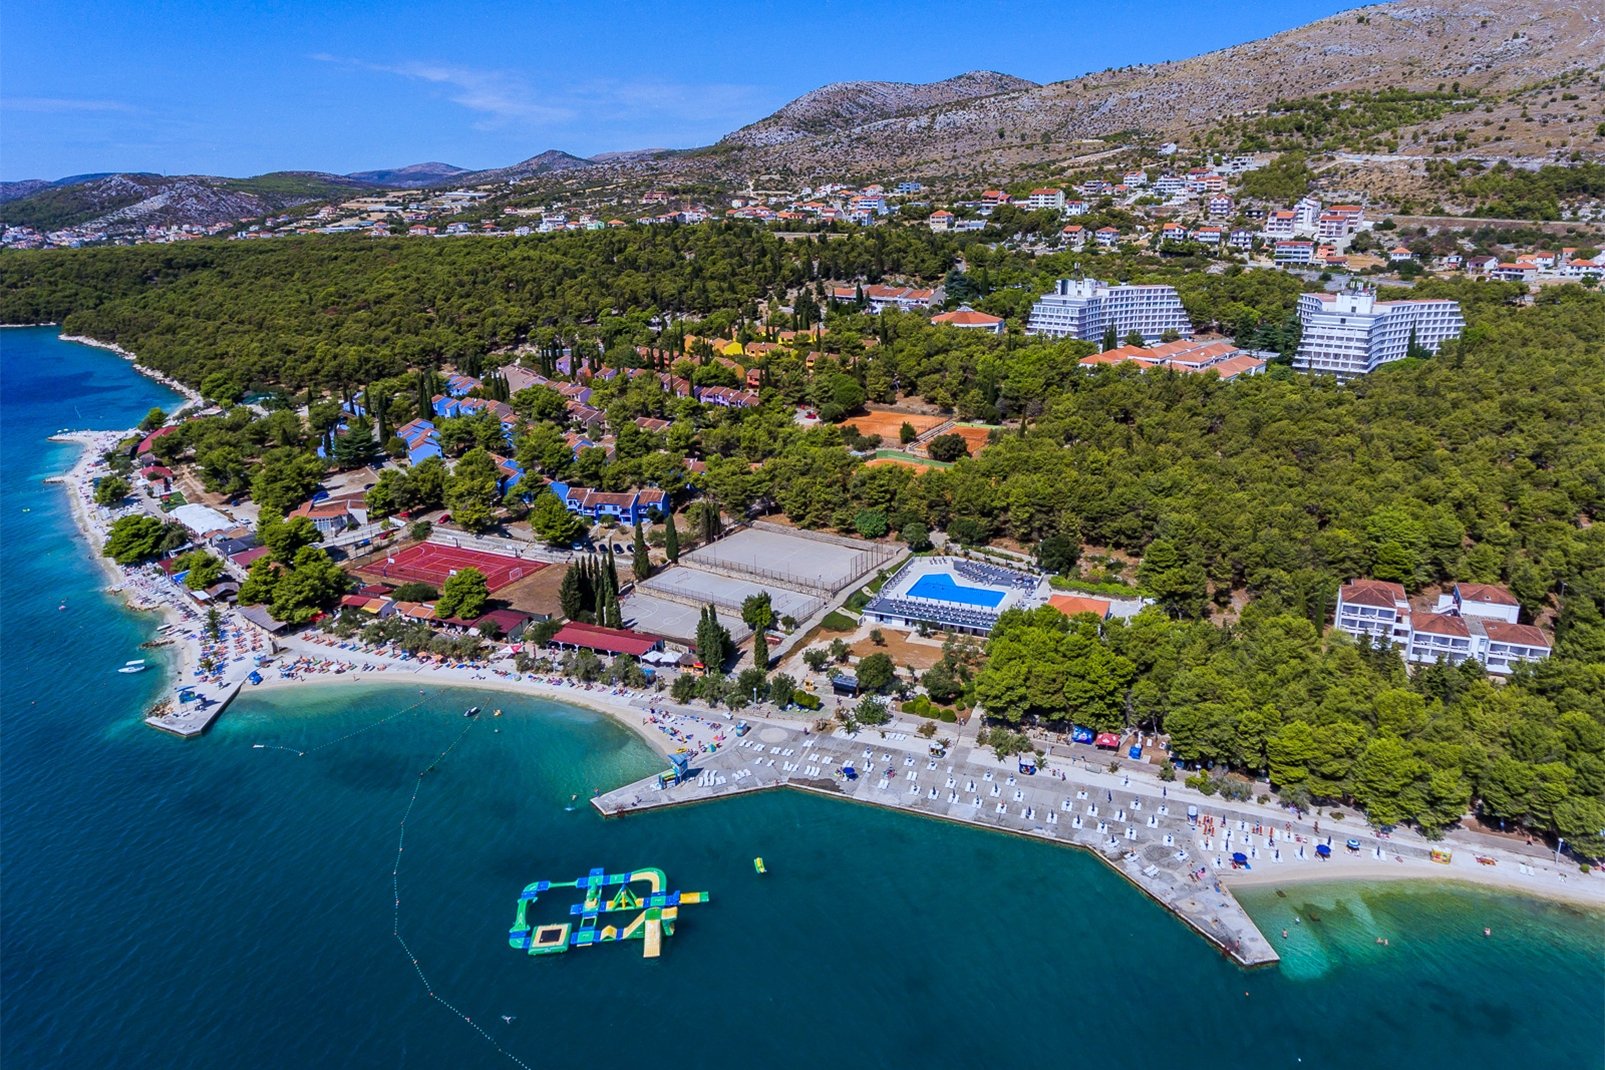 Vacances en Croatie, des séjours 8j/7n à partir de 374€/pers tout compris avec vol inclus